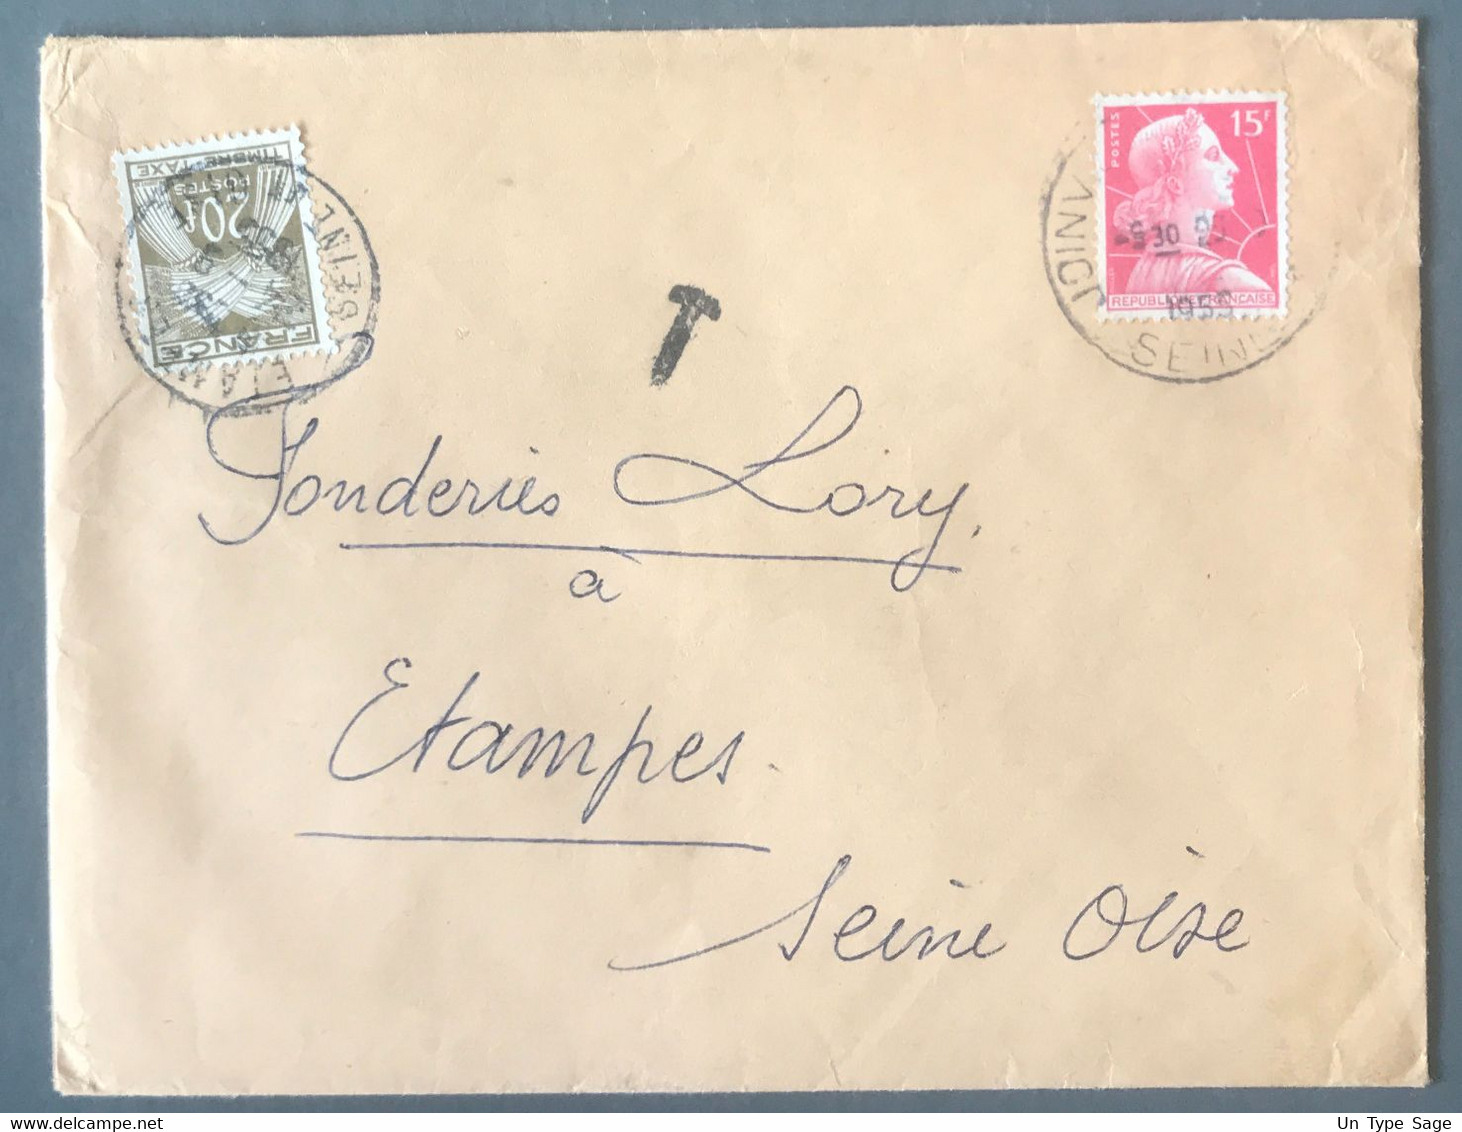 France Taxe N°87 Sur Enveloppe 1955 - (C1494) - 1859-1959 Lettres & Documents